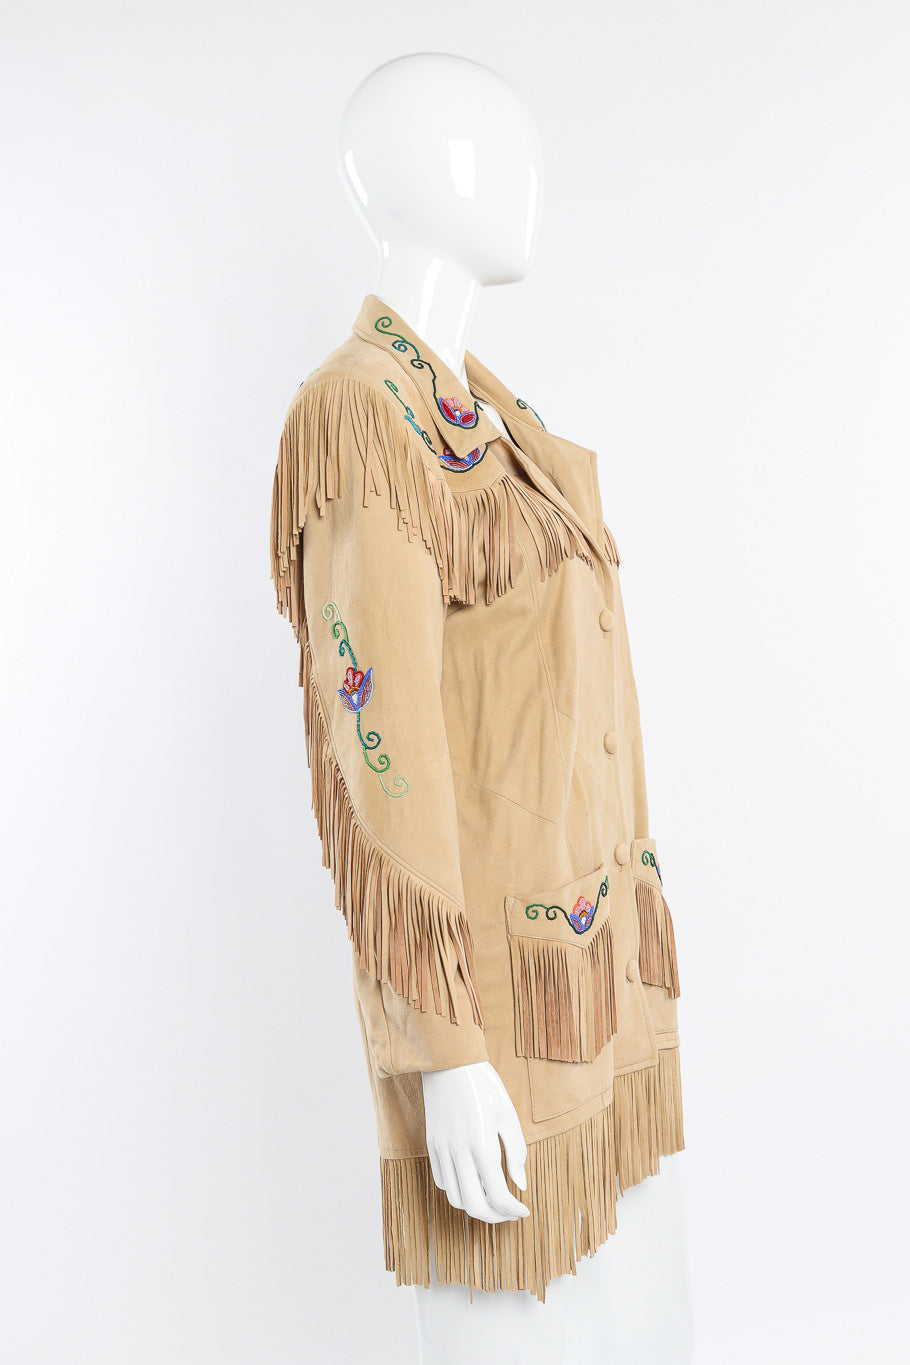 Vintage Char suede fringe jacket side view on mannequin @Recessla